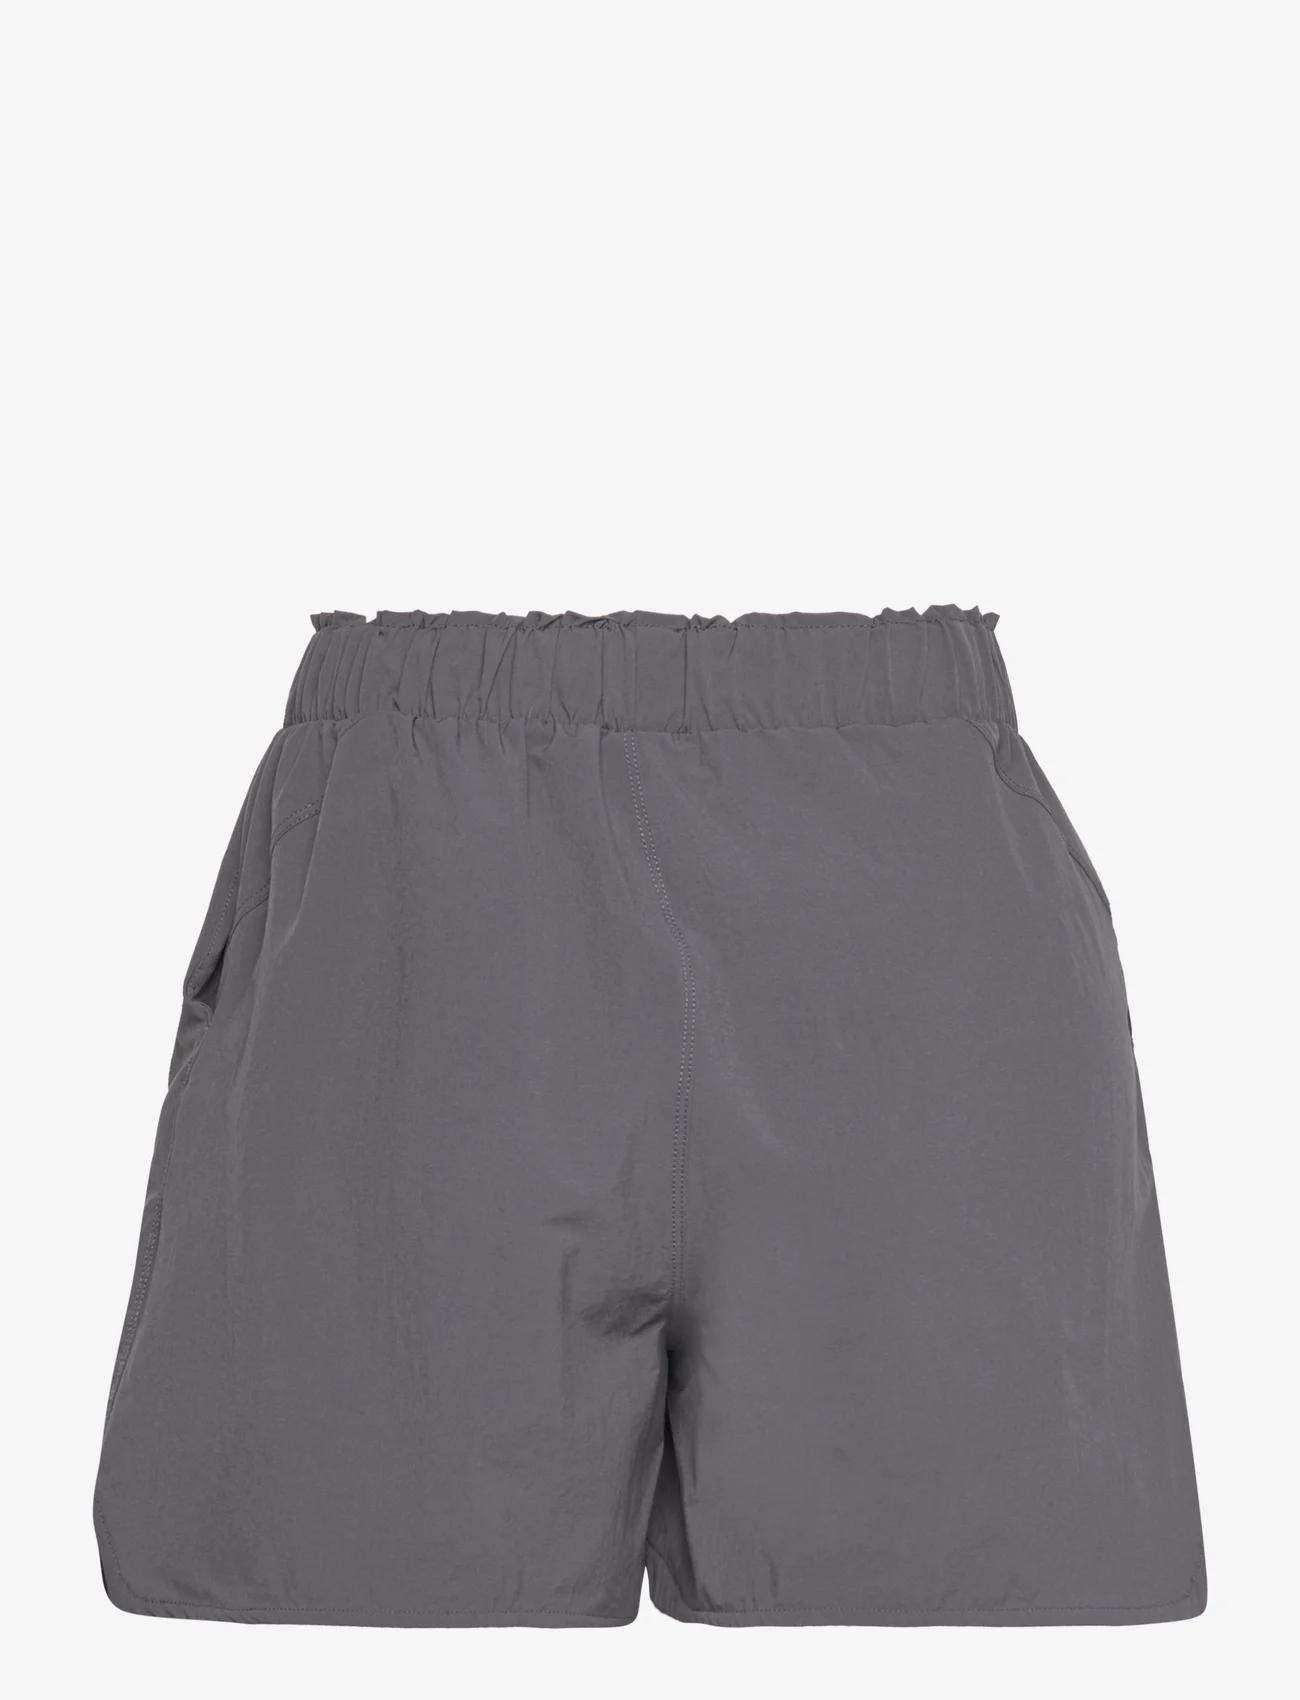 Svea - W. Drawstring Shorts - kasdienio stiliaus šortai - light grey - 1